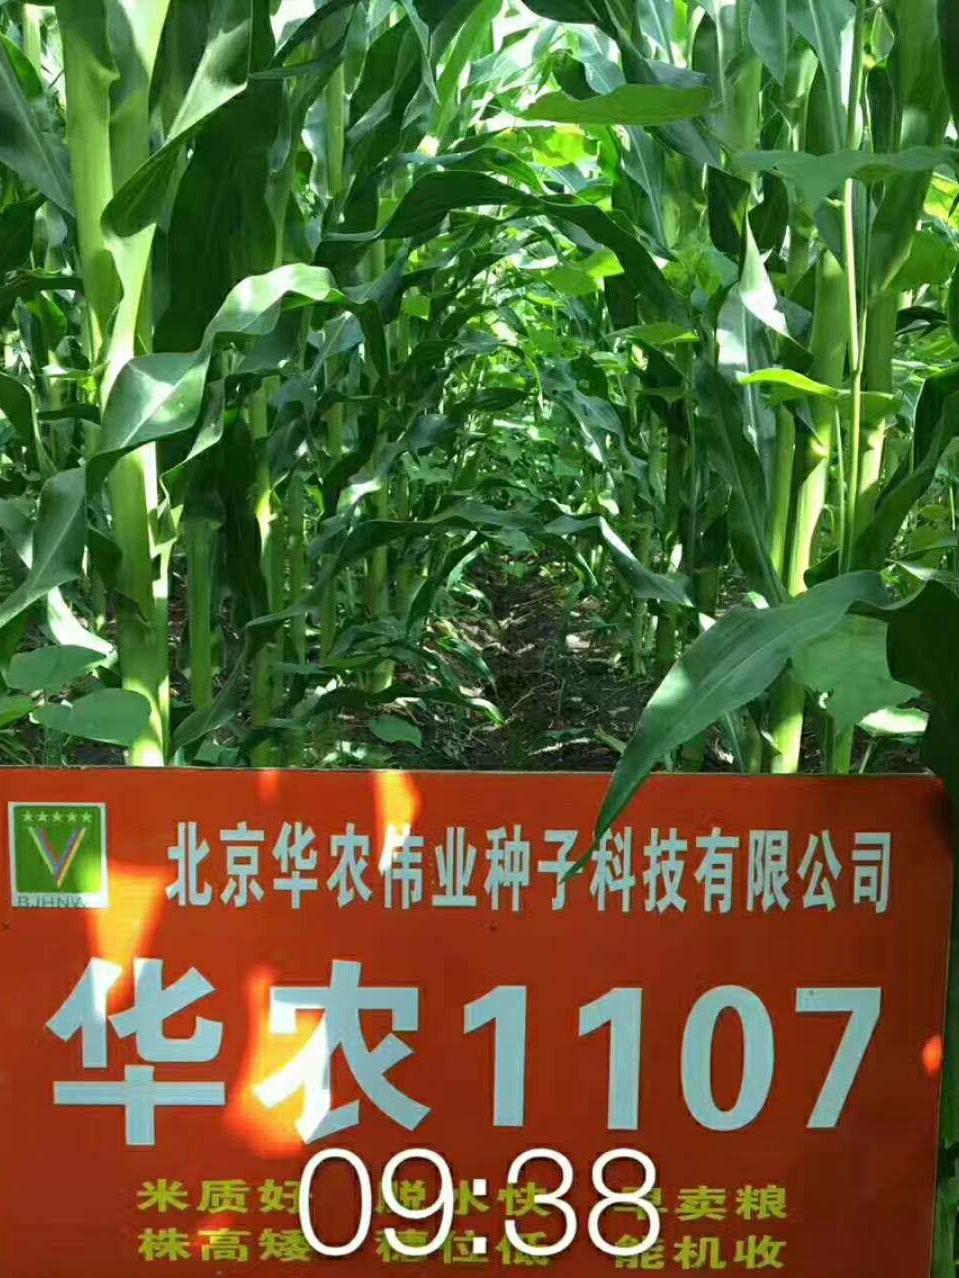 2017年国审大品种华农1107中国玉米新贵族引领农民走上致富之路